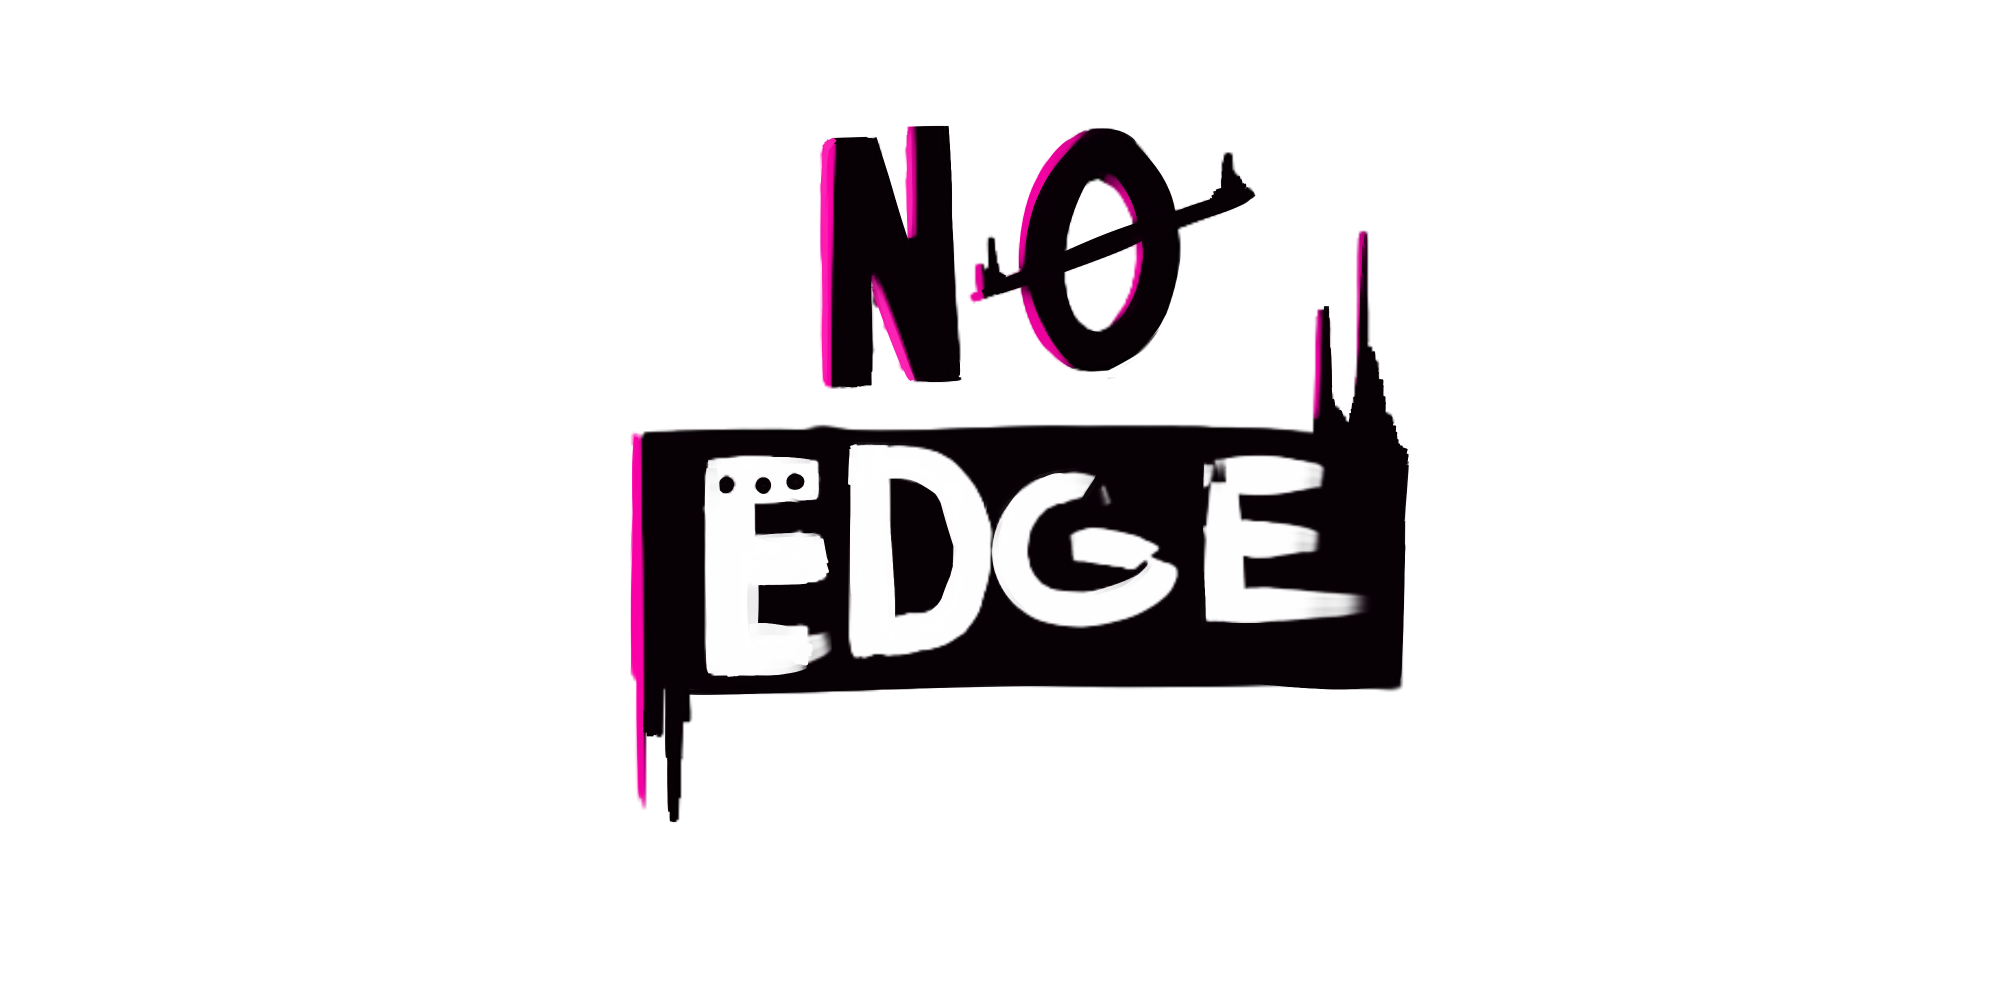 NO EDGE